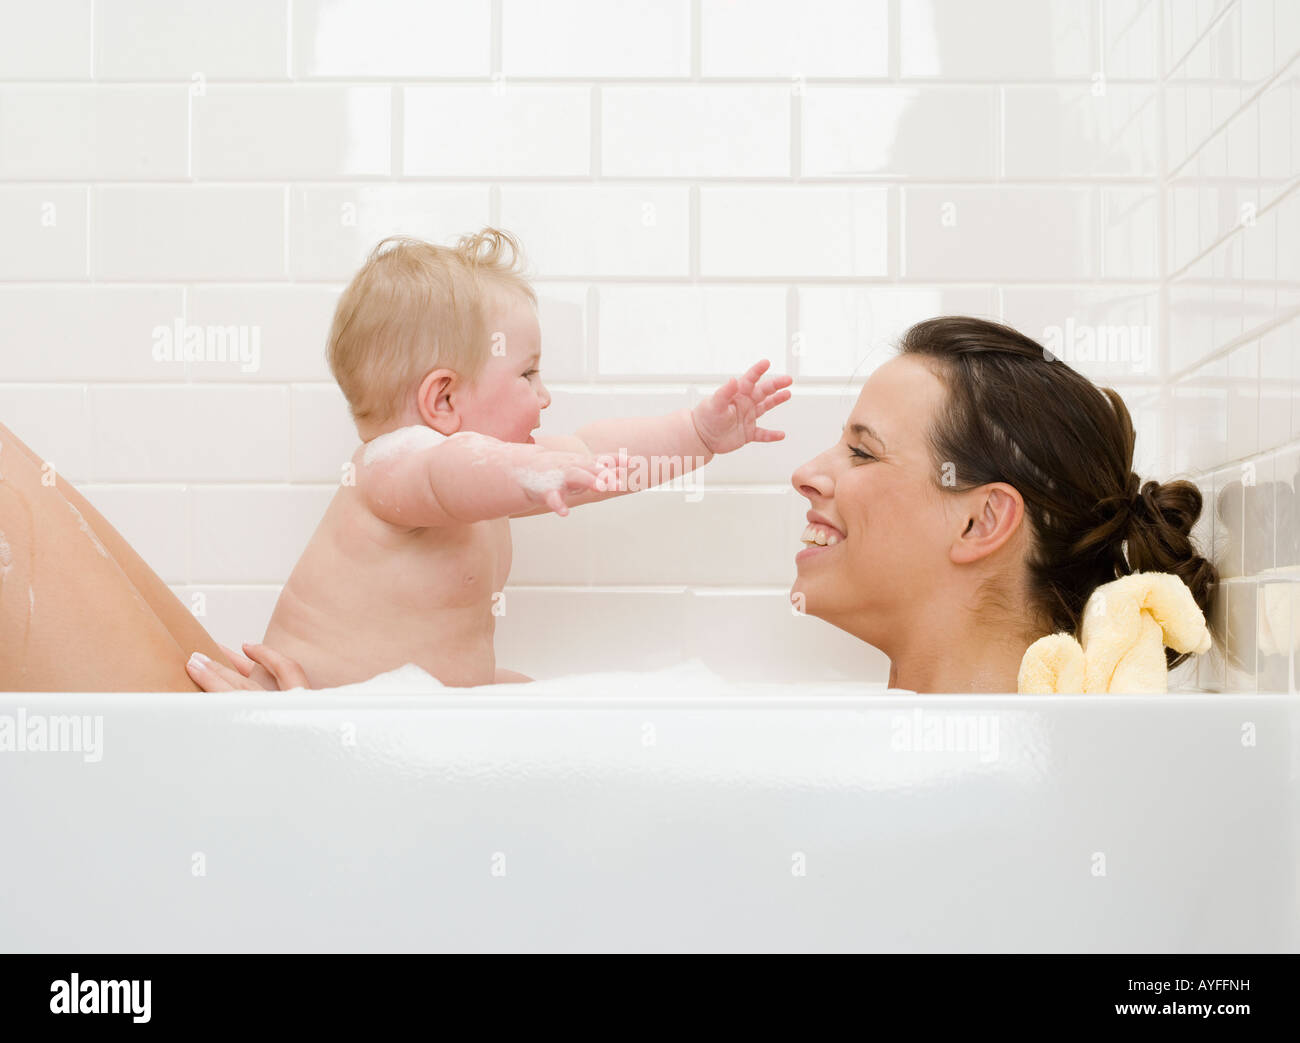 Купание малыша с мамой в ванне. Мама купает ребенка. Совместное купание с малышом. Совместное купание с грудничком. Совместное купание с грудничком в ванной.